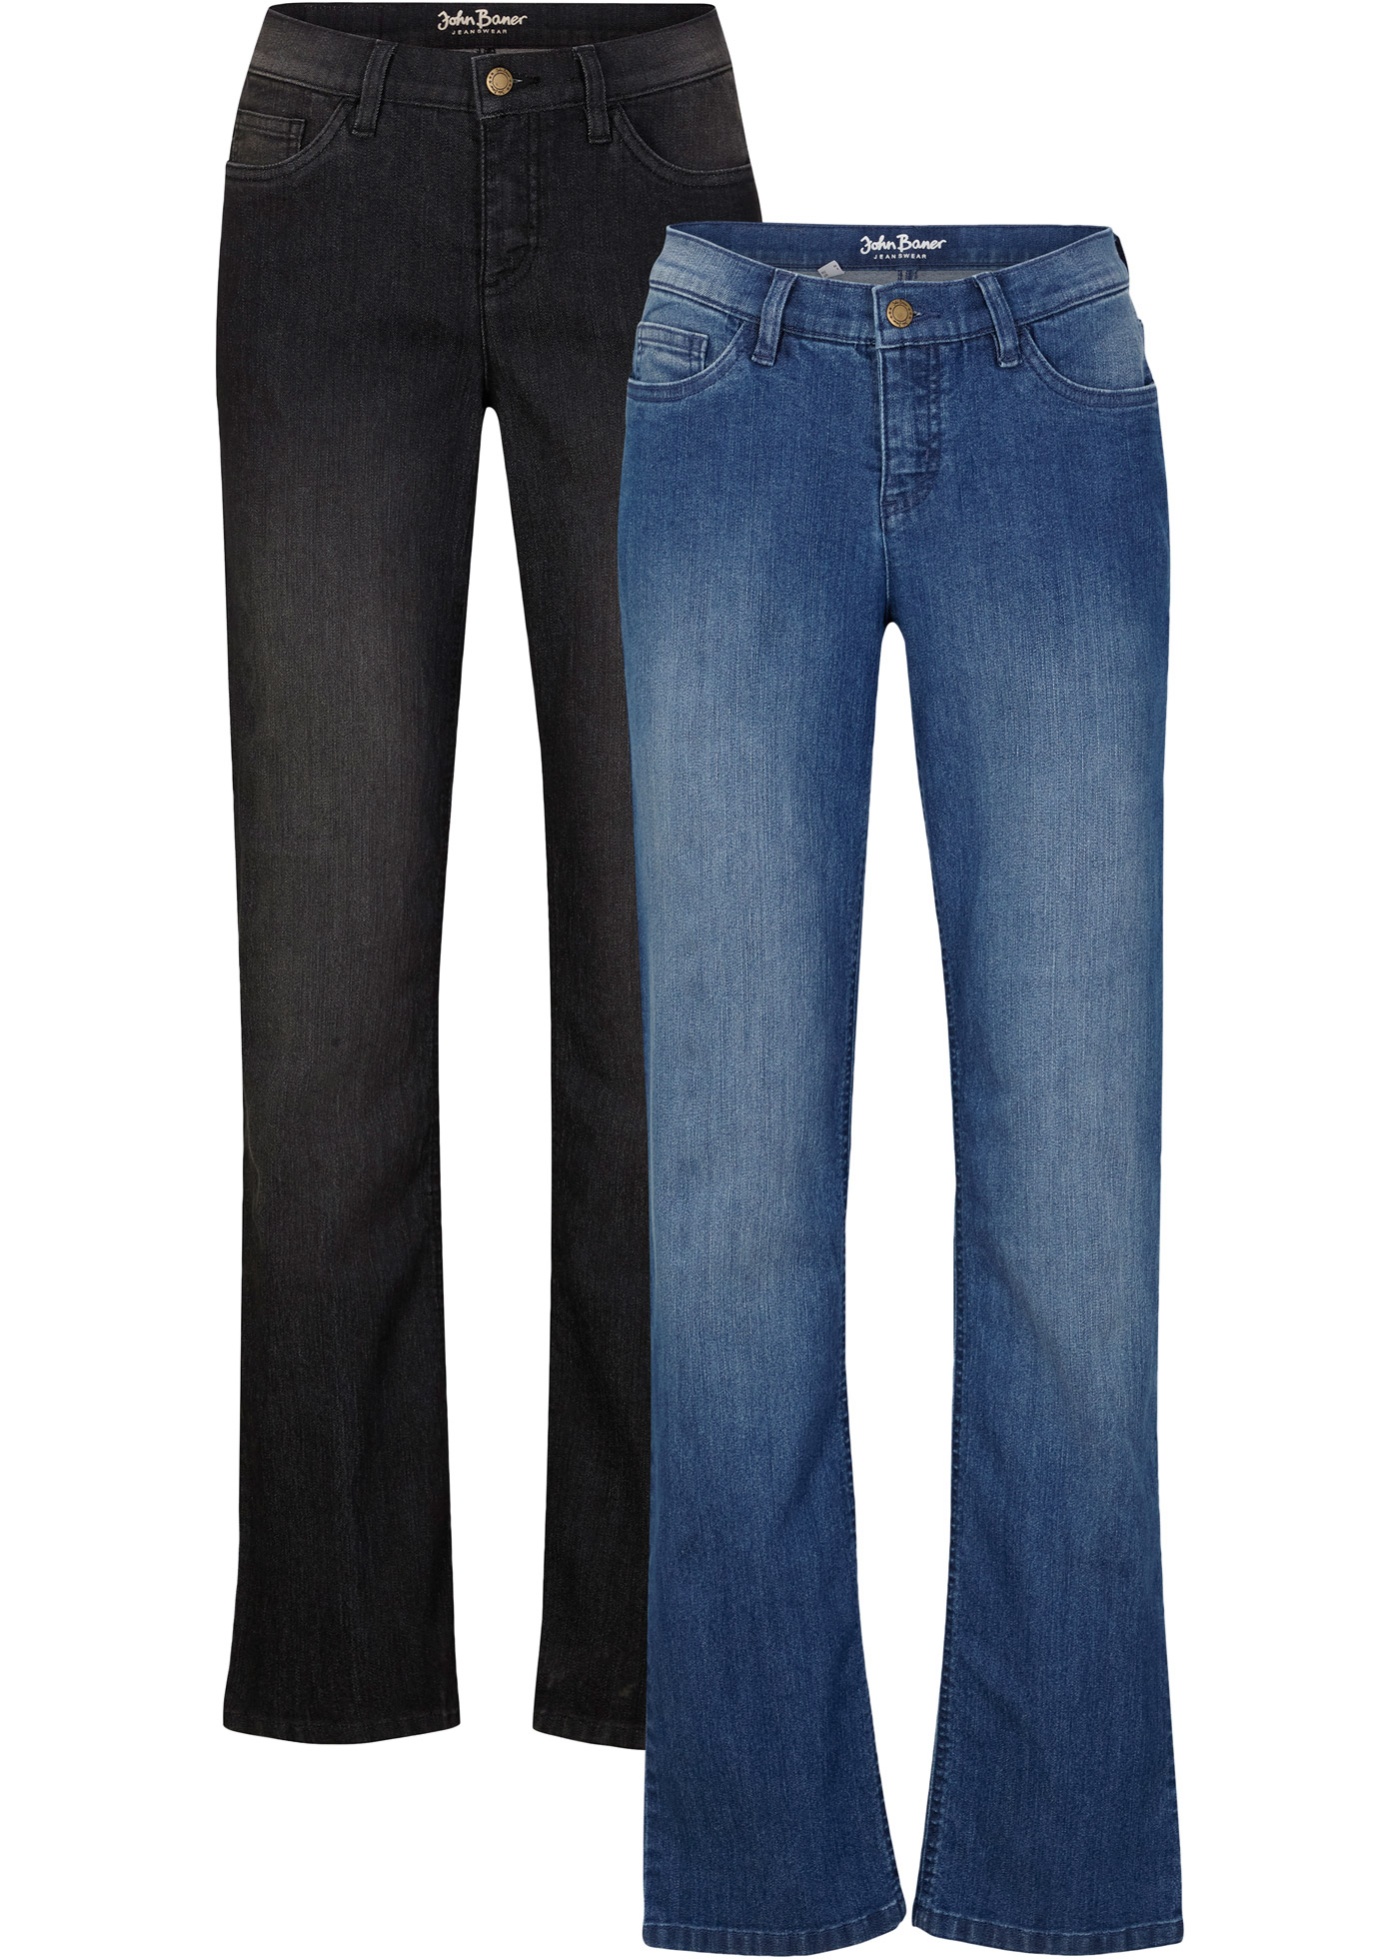 Komfortné strečové džínsy, rovné, 2 ks v balení